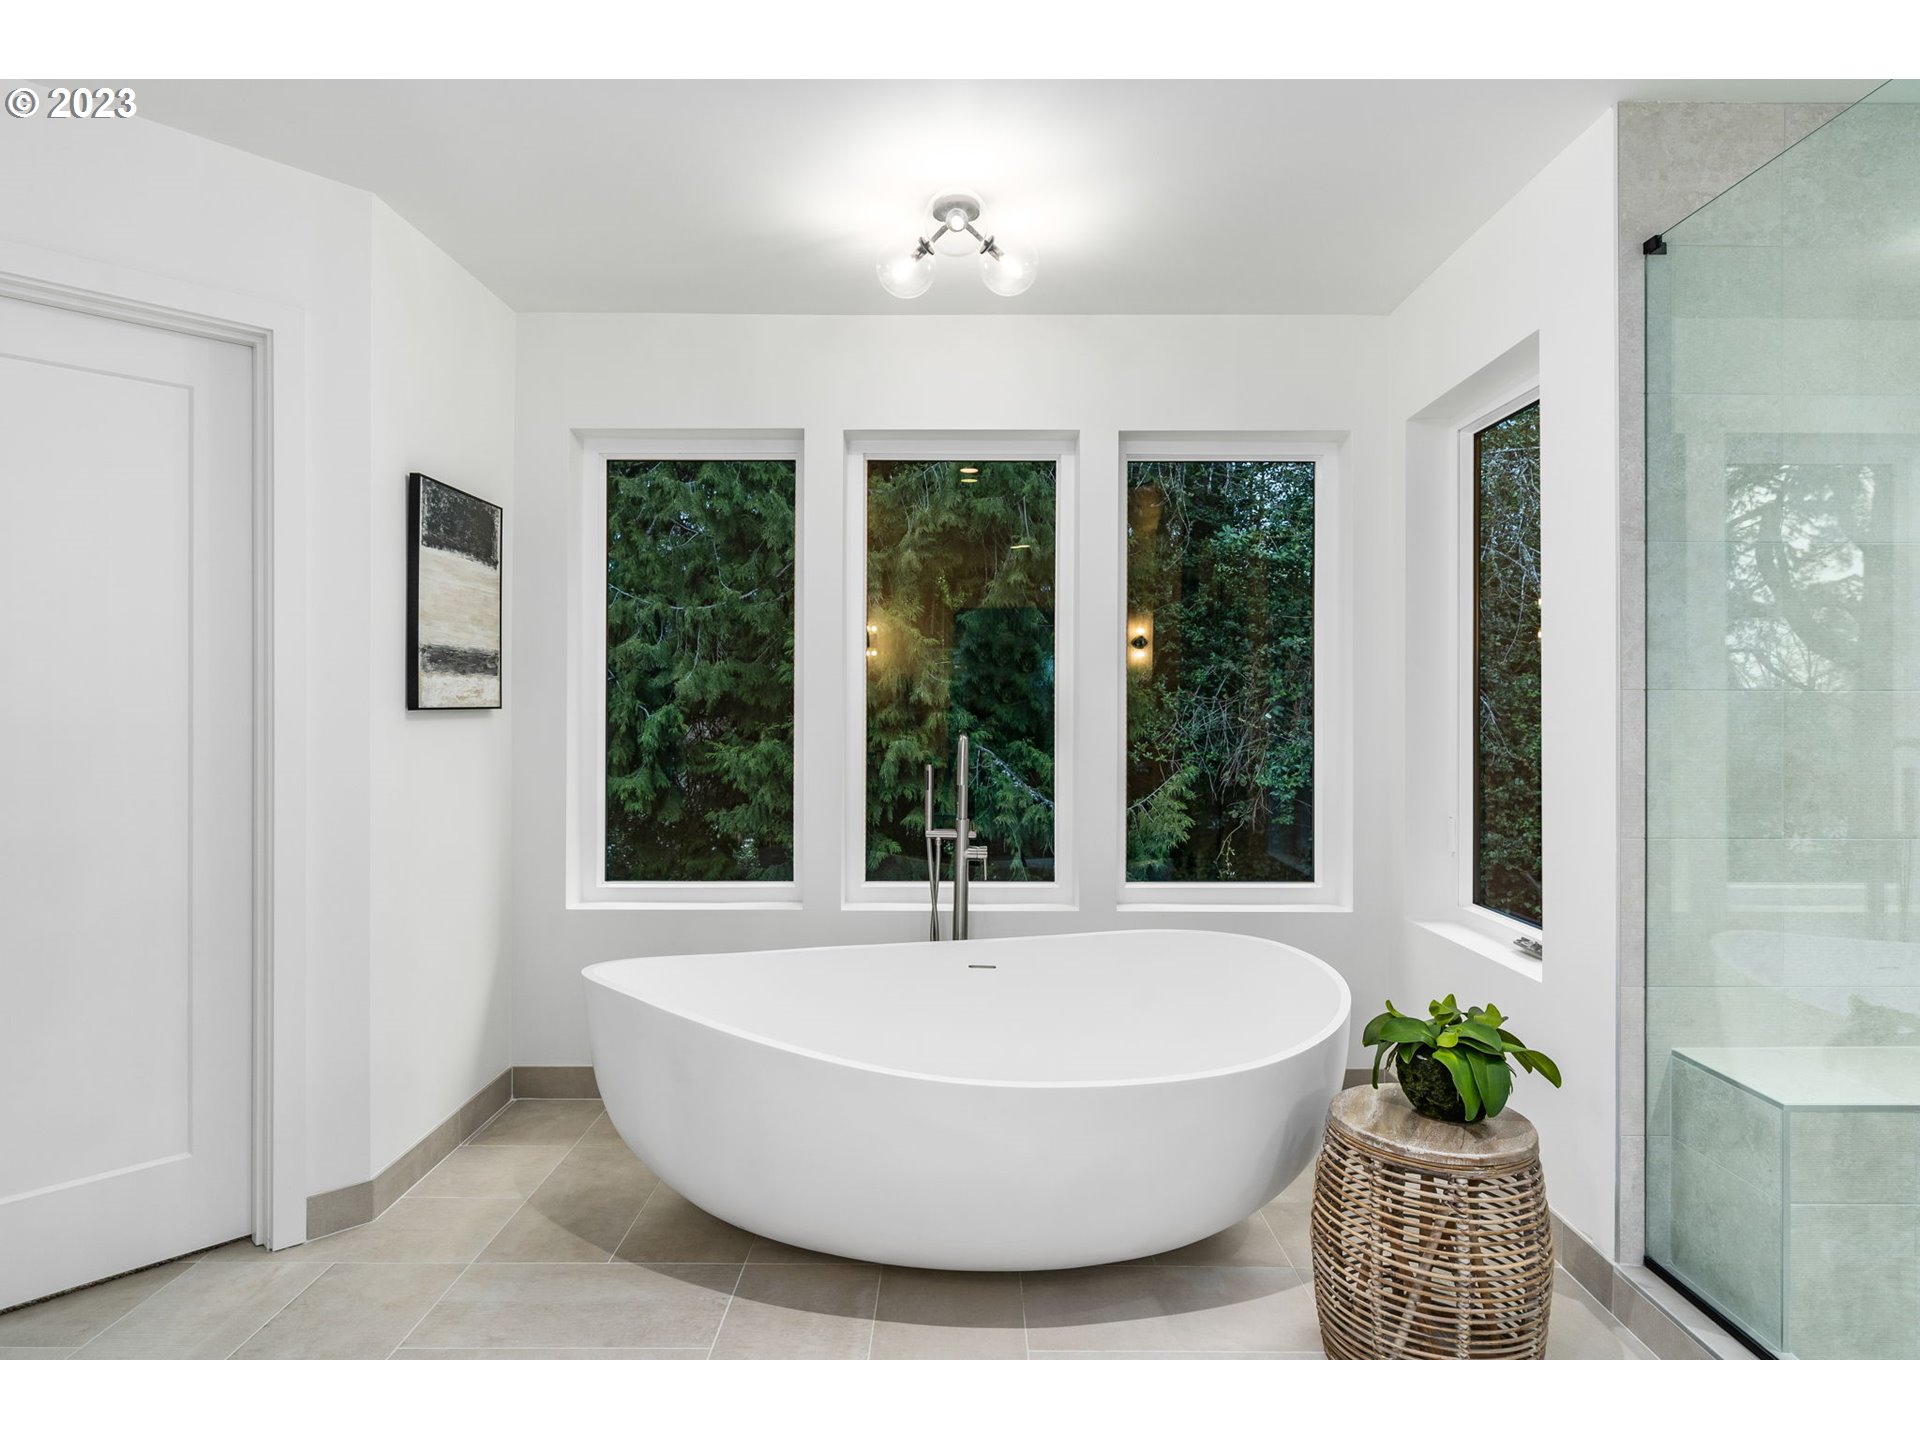 Owner's Suite Bathroom-Garden Tub